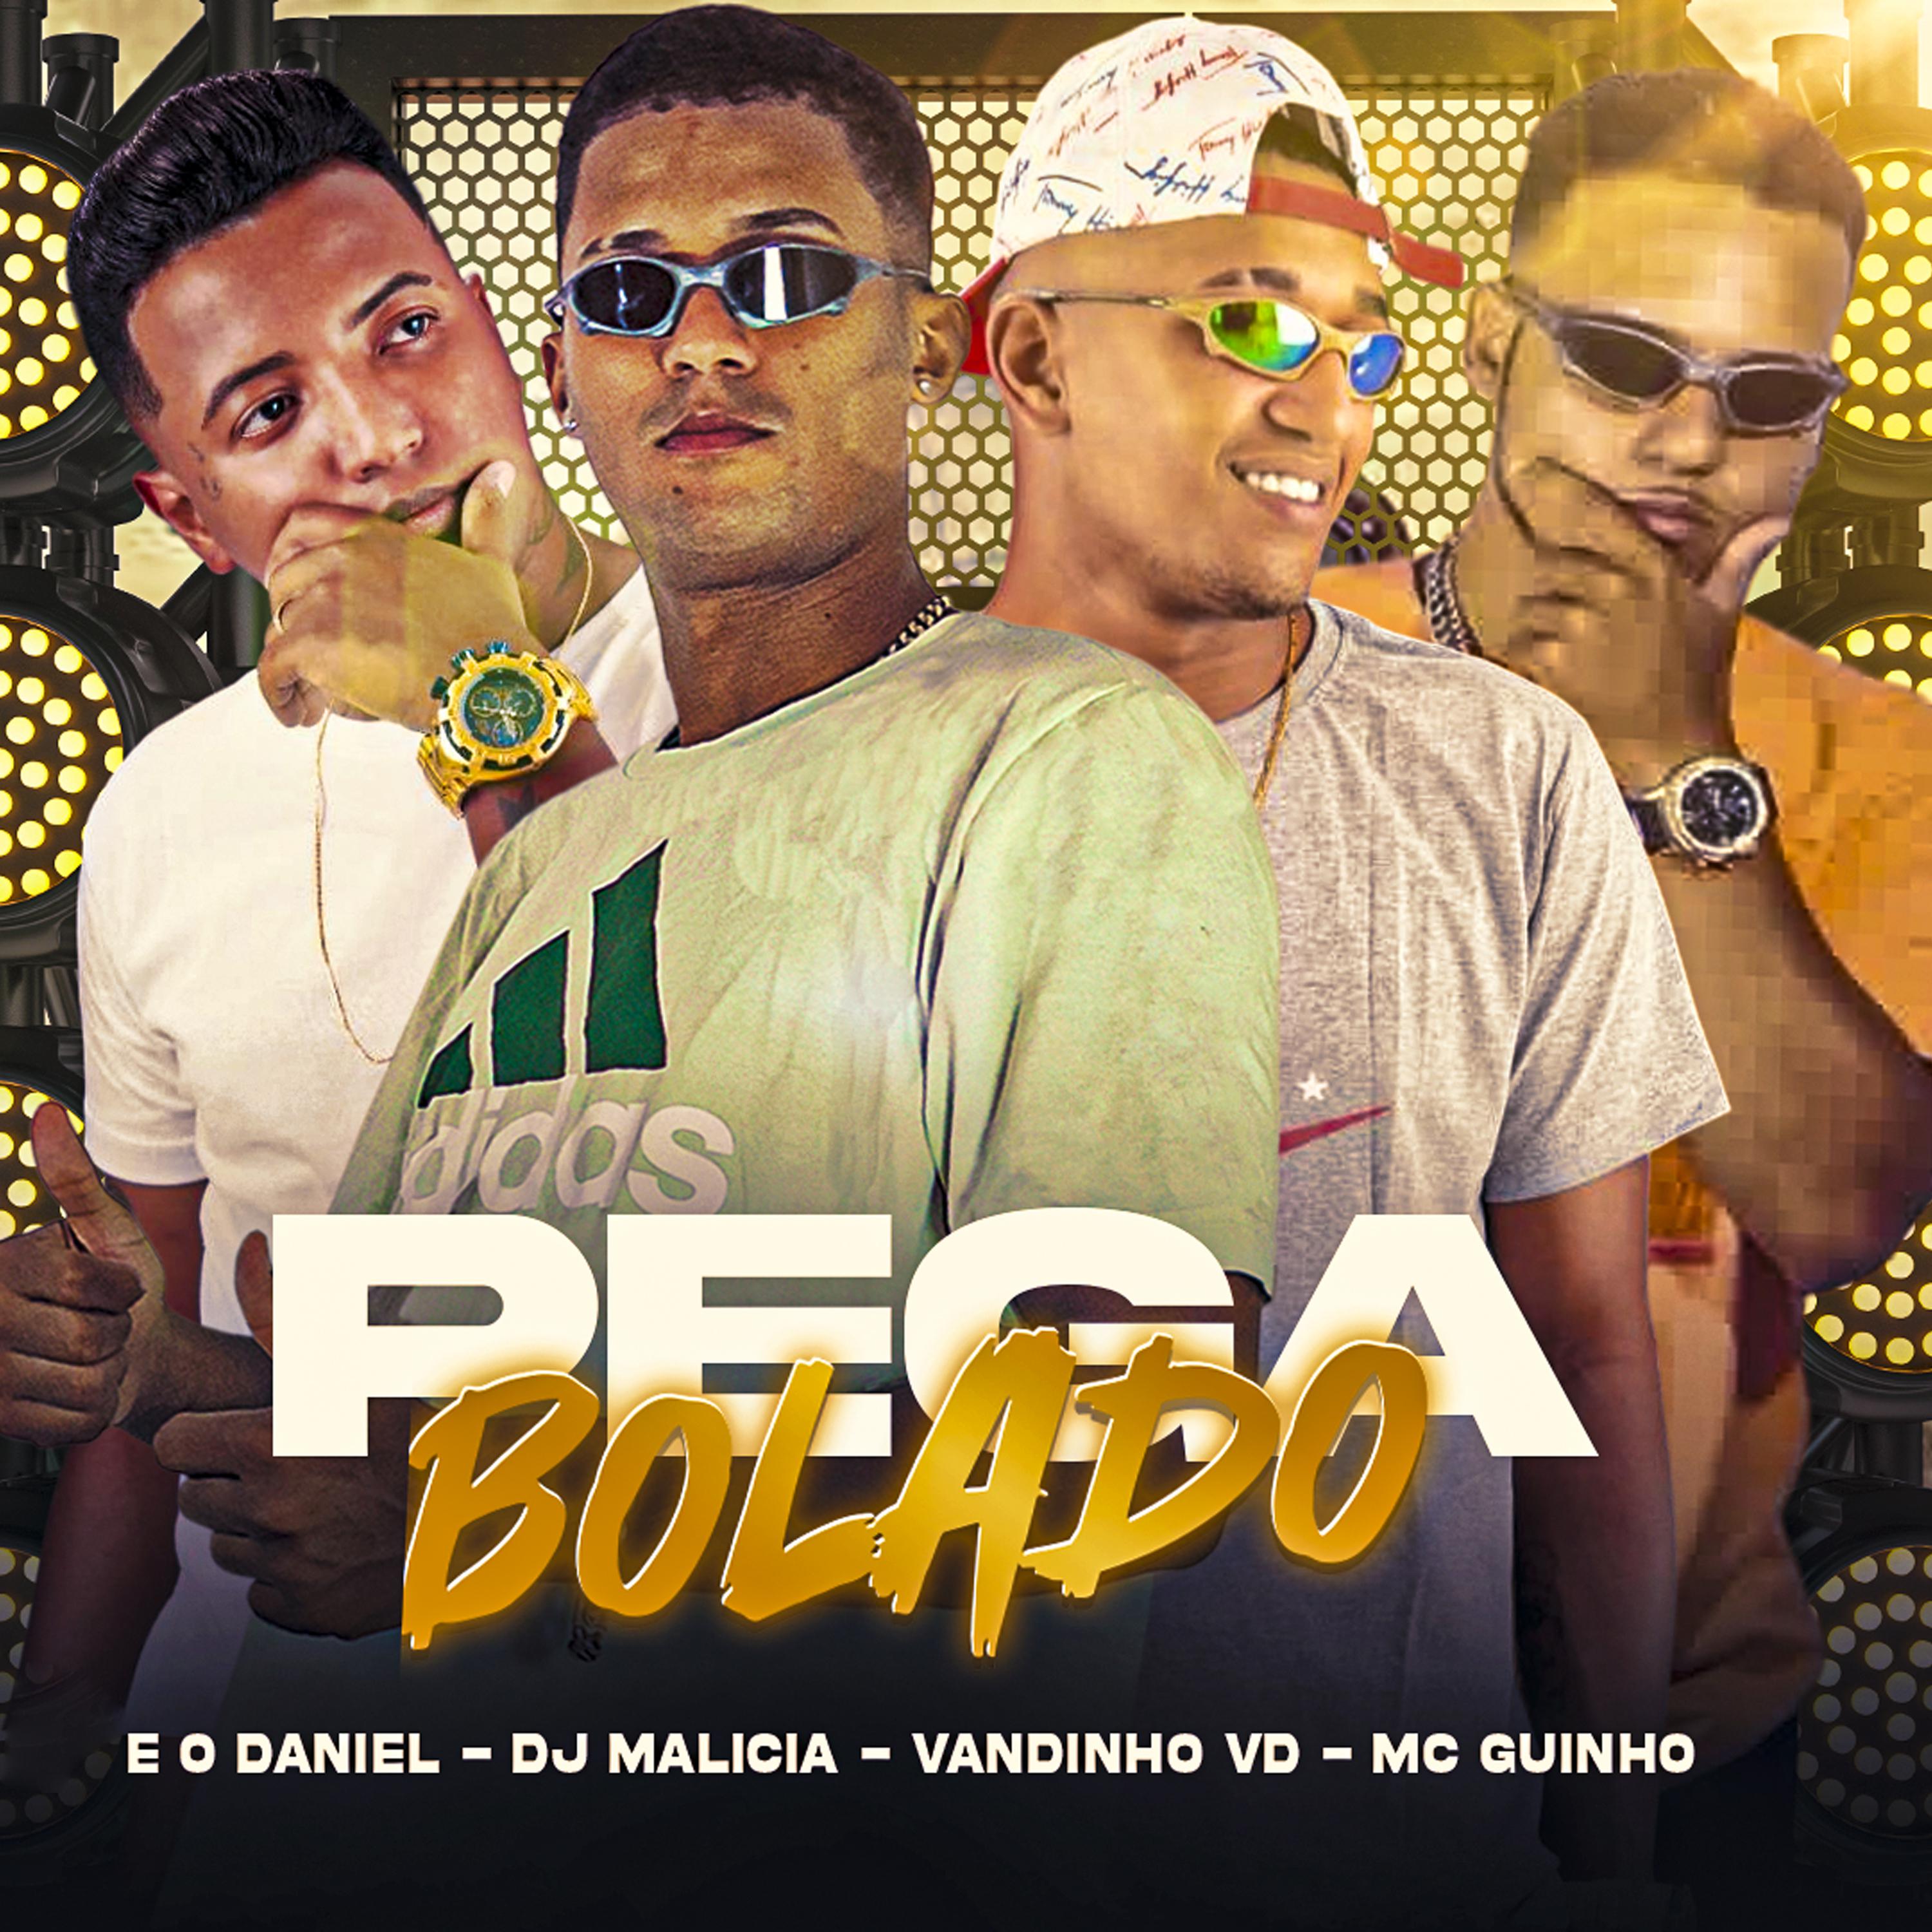 Постер альбома Pega Bolado